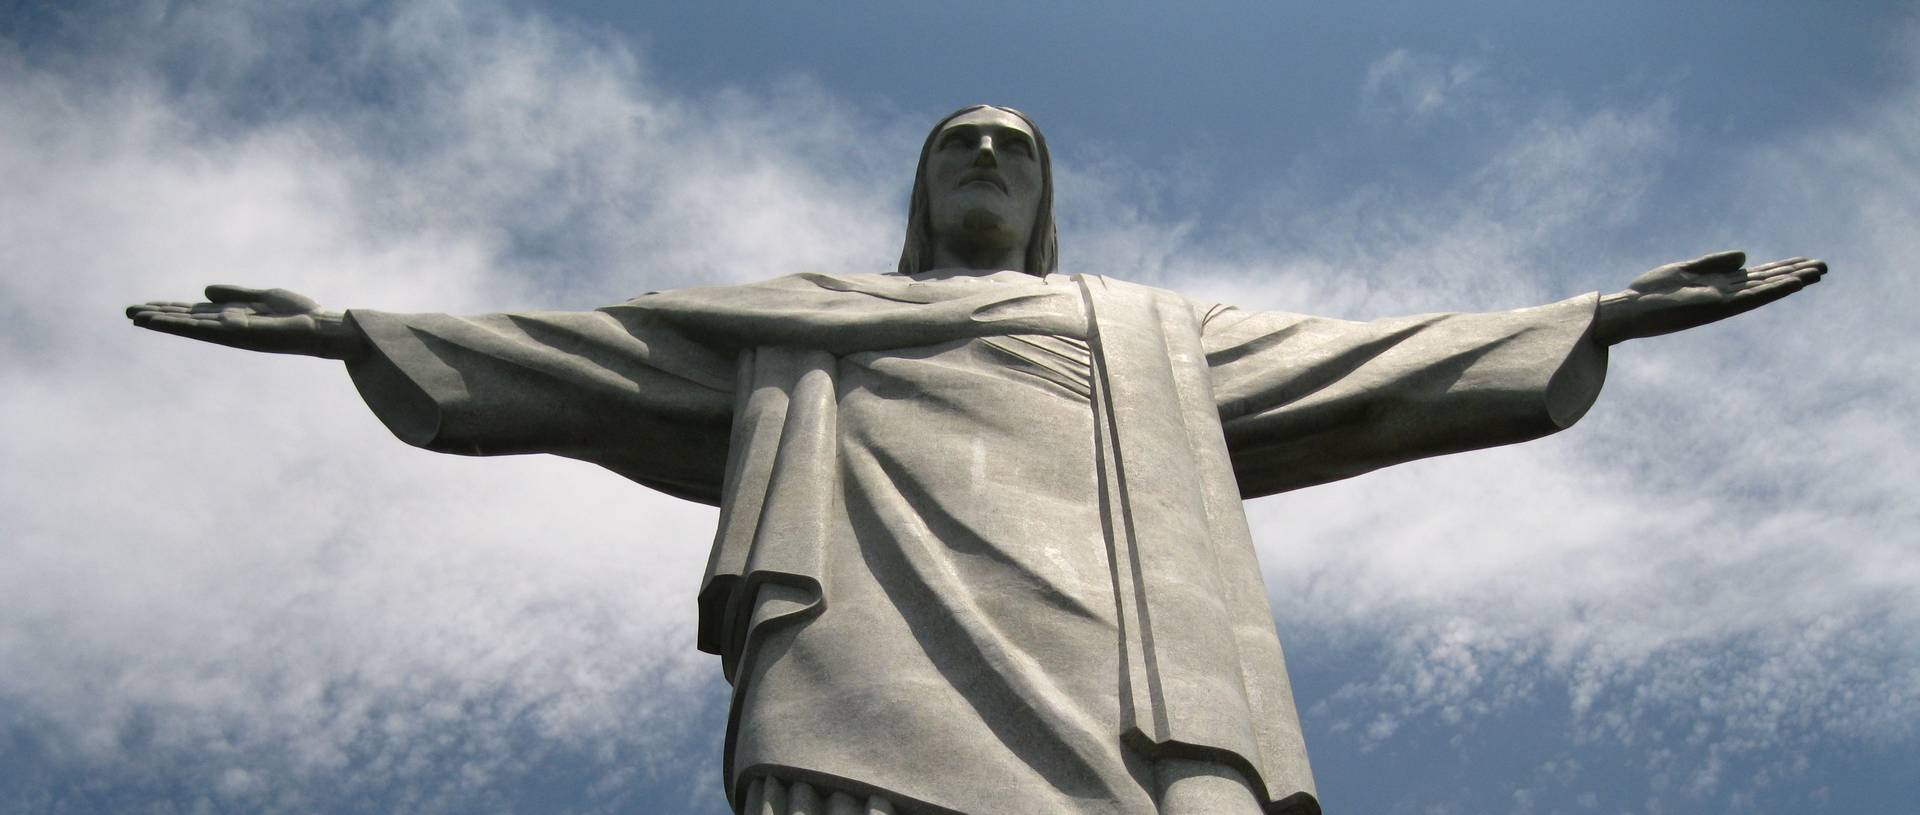 Christ The Redeemer, Rio De Janeiro